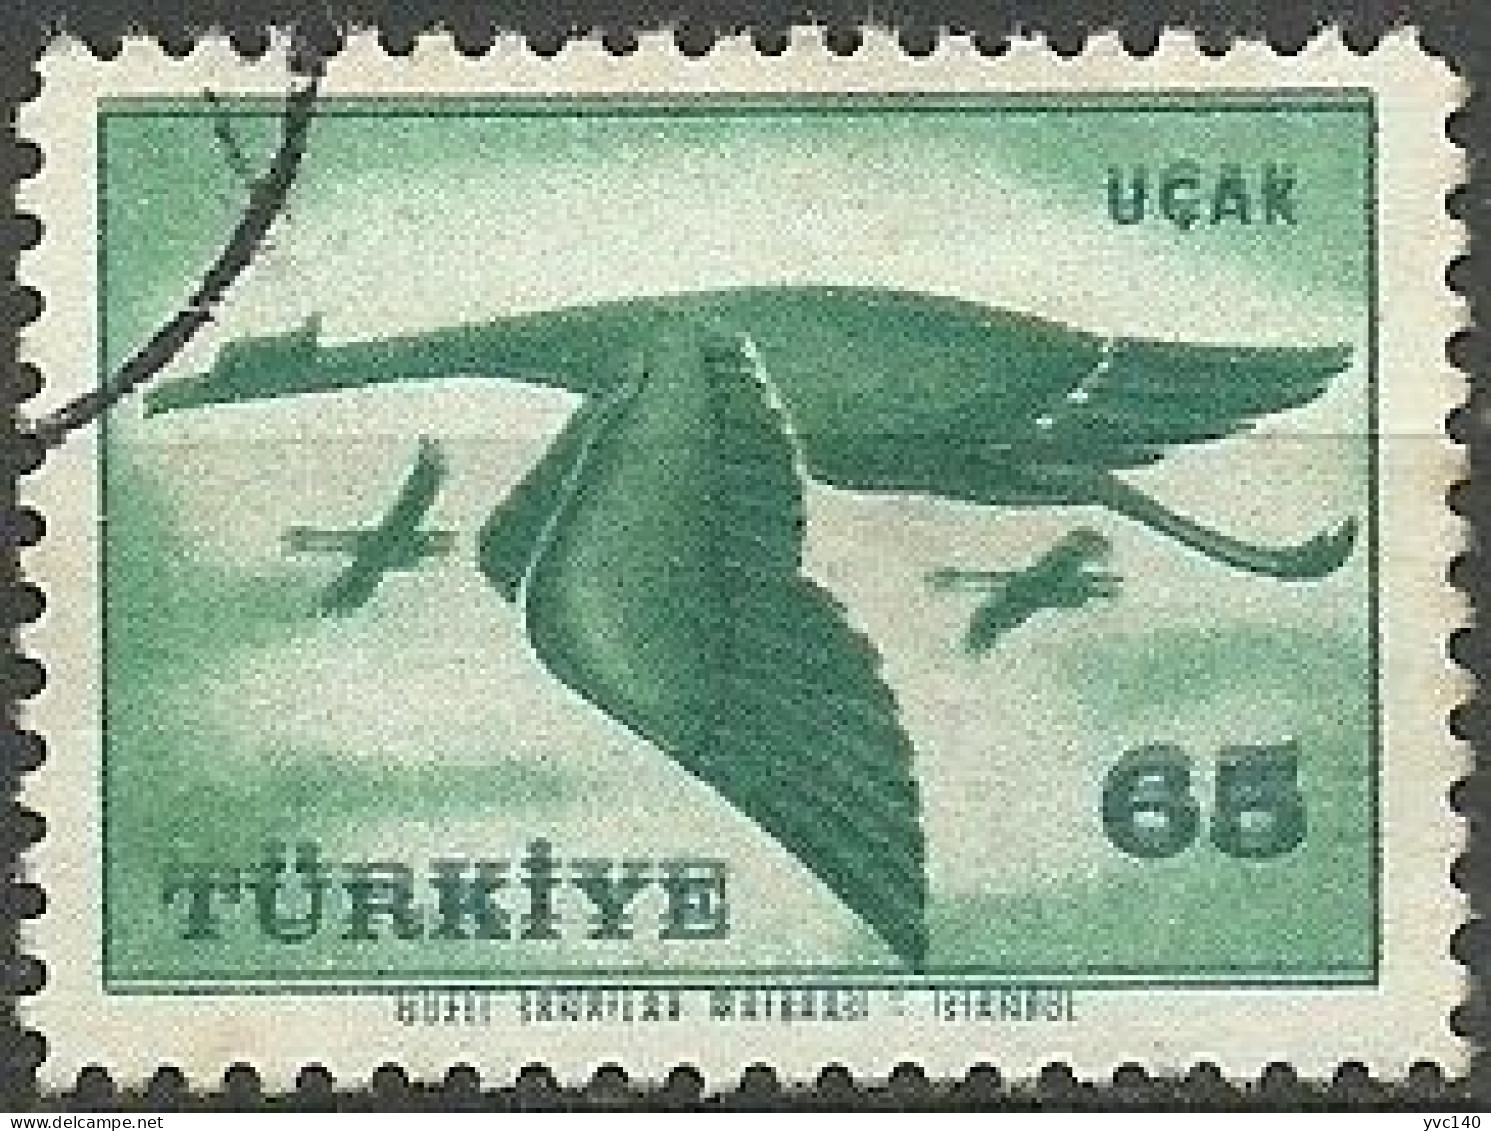 Turkey; 1959 Airmail Stamp 65 K. ERROR "Shifted Print" - Gebraucht